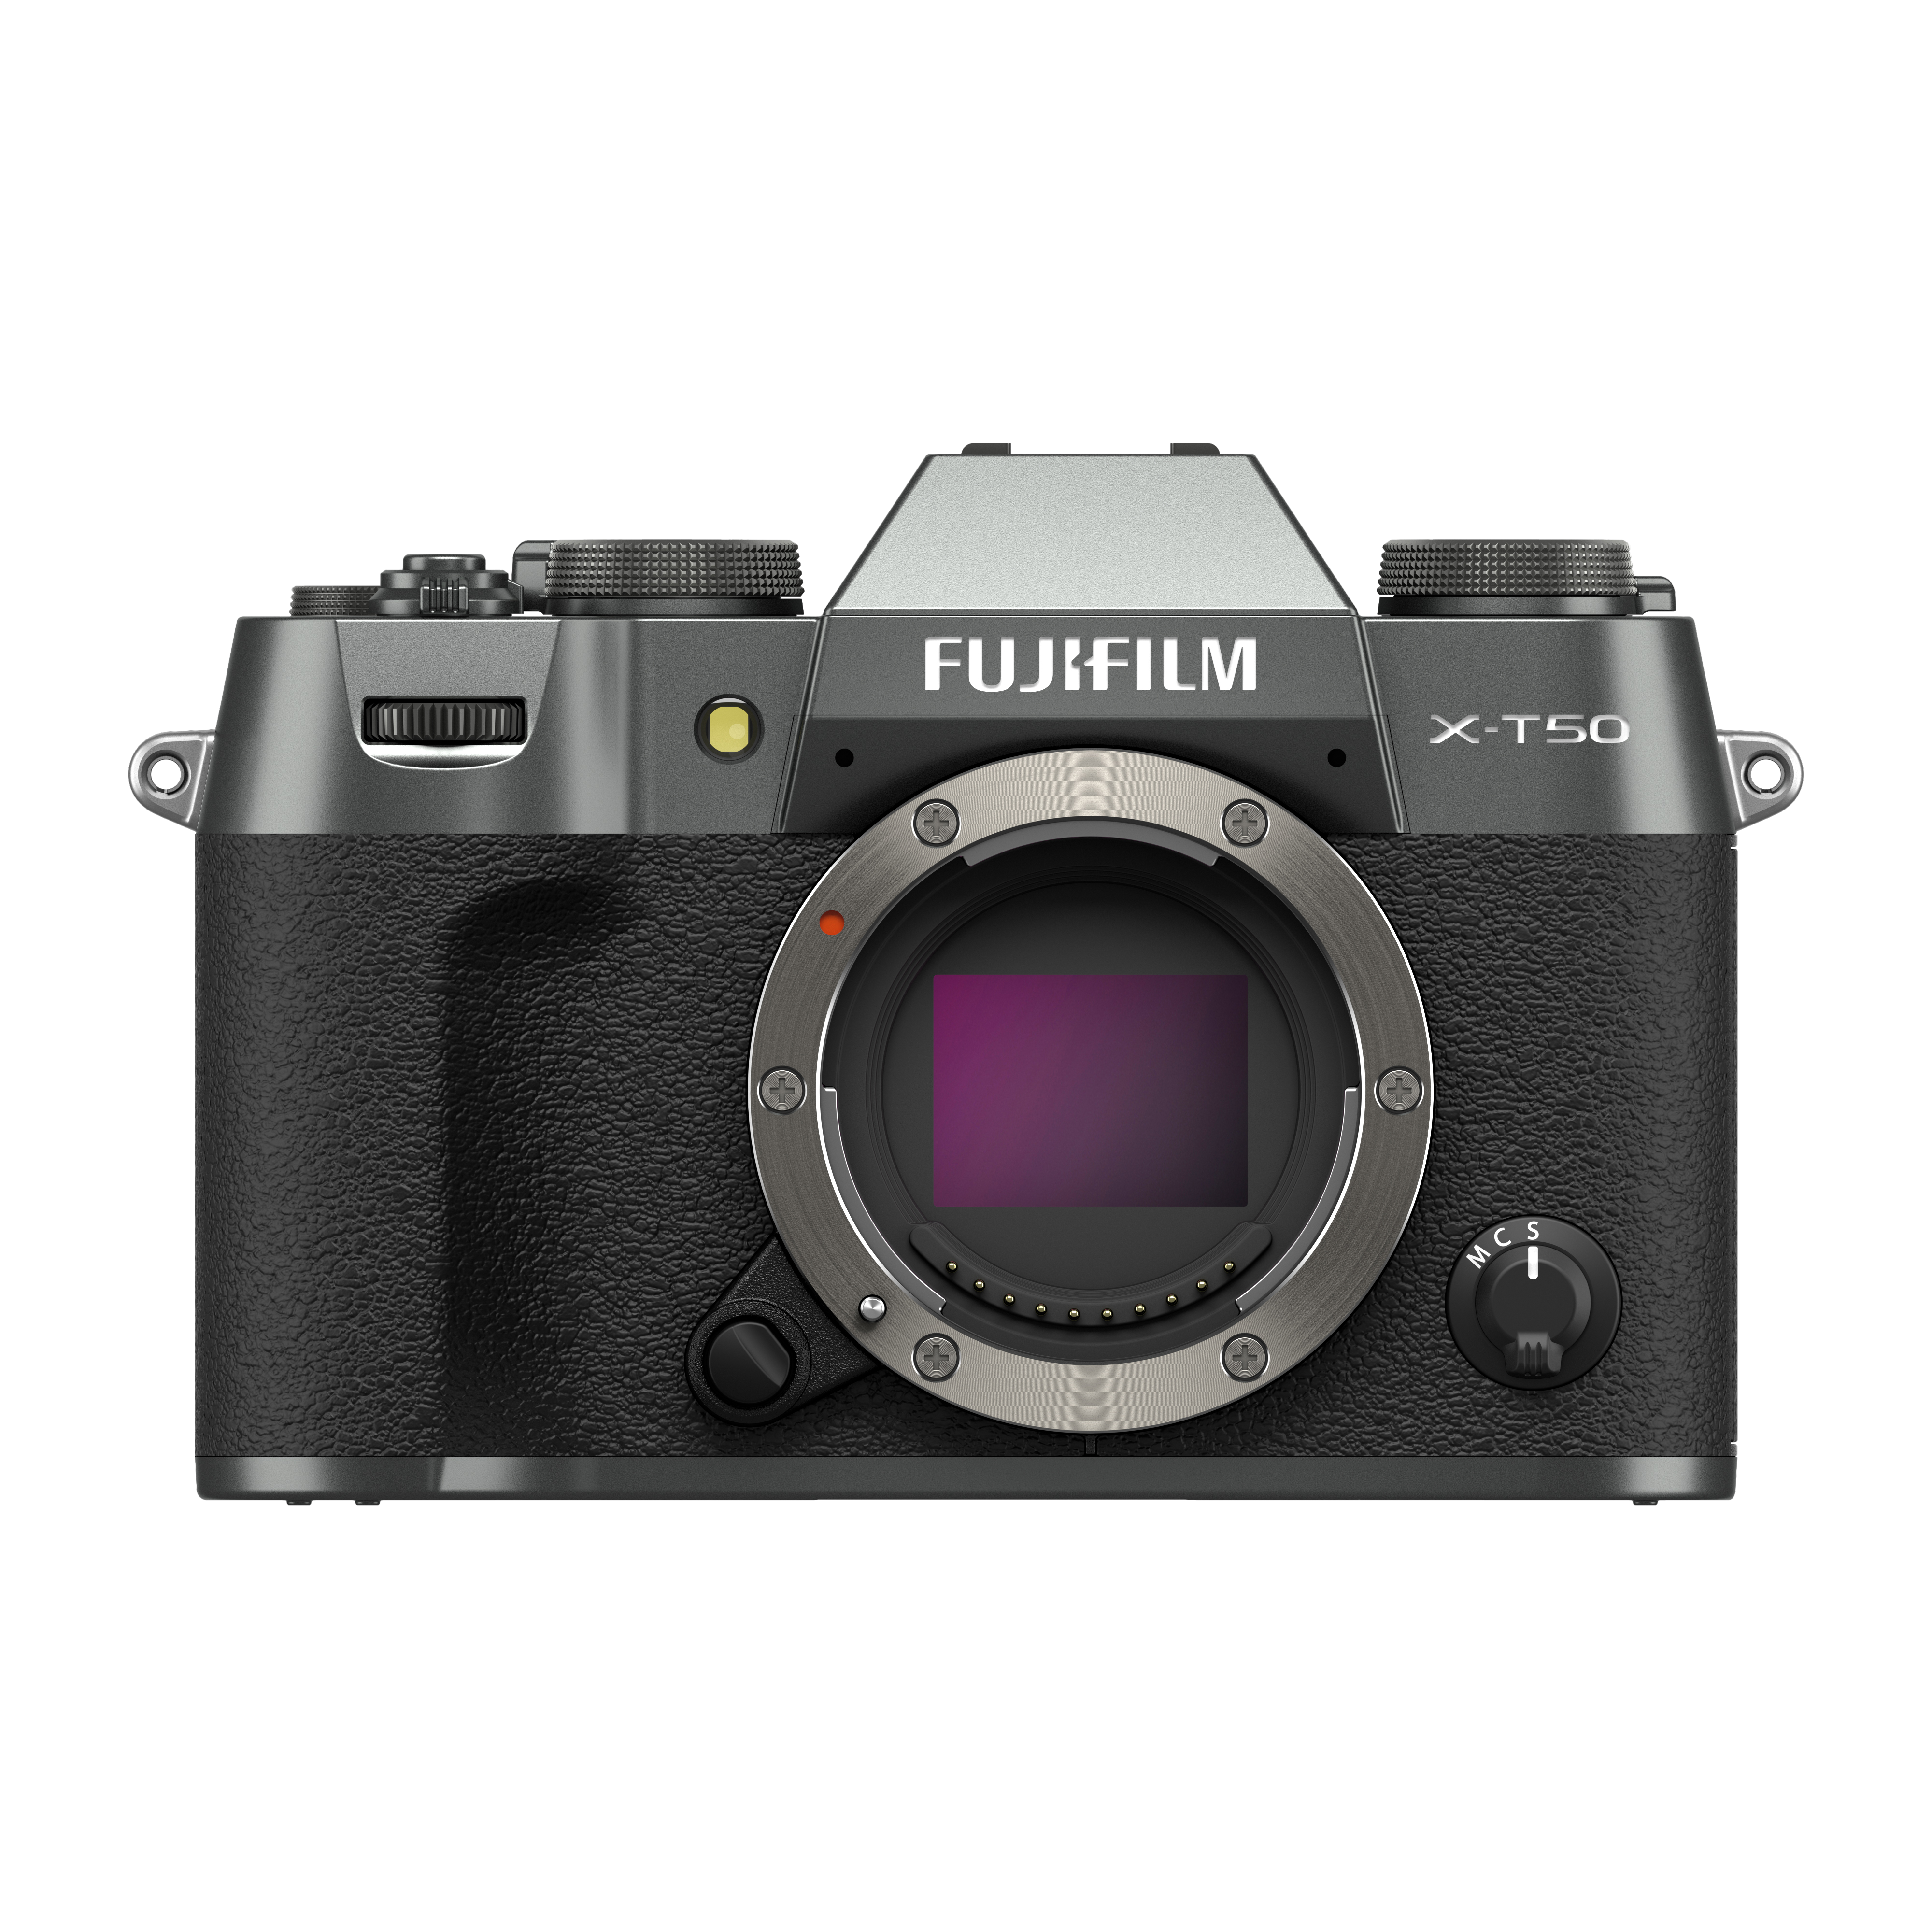 FUJIFILM X-T50 สี Charcoal เป็นกล้องดิจิตอล ดีไซน์ขนาดกะทัดรัดและน้ำหนักเบา ด้วยคุณสมบัติจำลองฟิล์มที่รวมอยู่ใน Film Dial ด้านบน สามารถสลับระหว่างโทนสีที่หลากหลายได้อย่างง่ายดาย ช่วยสร้างสรรค์ภาพถ่ายที่โดดเด่นด้วยอรรถรสแบบมืออาชีพอีกด้วย